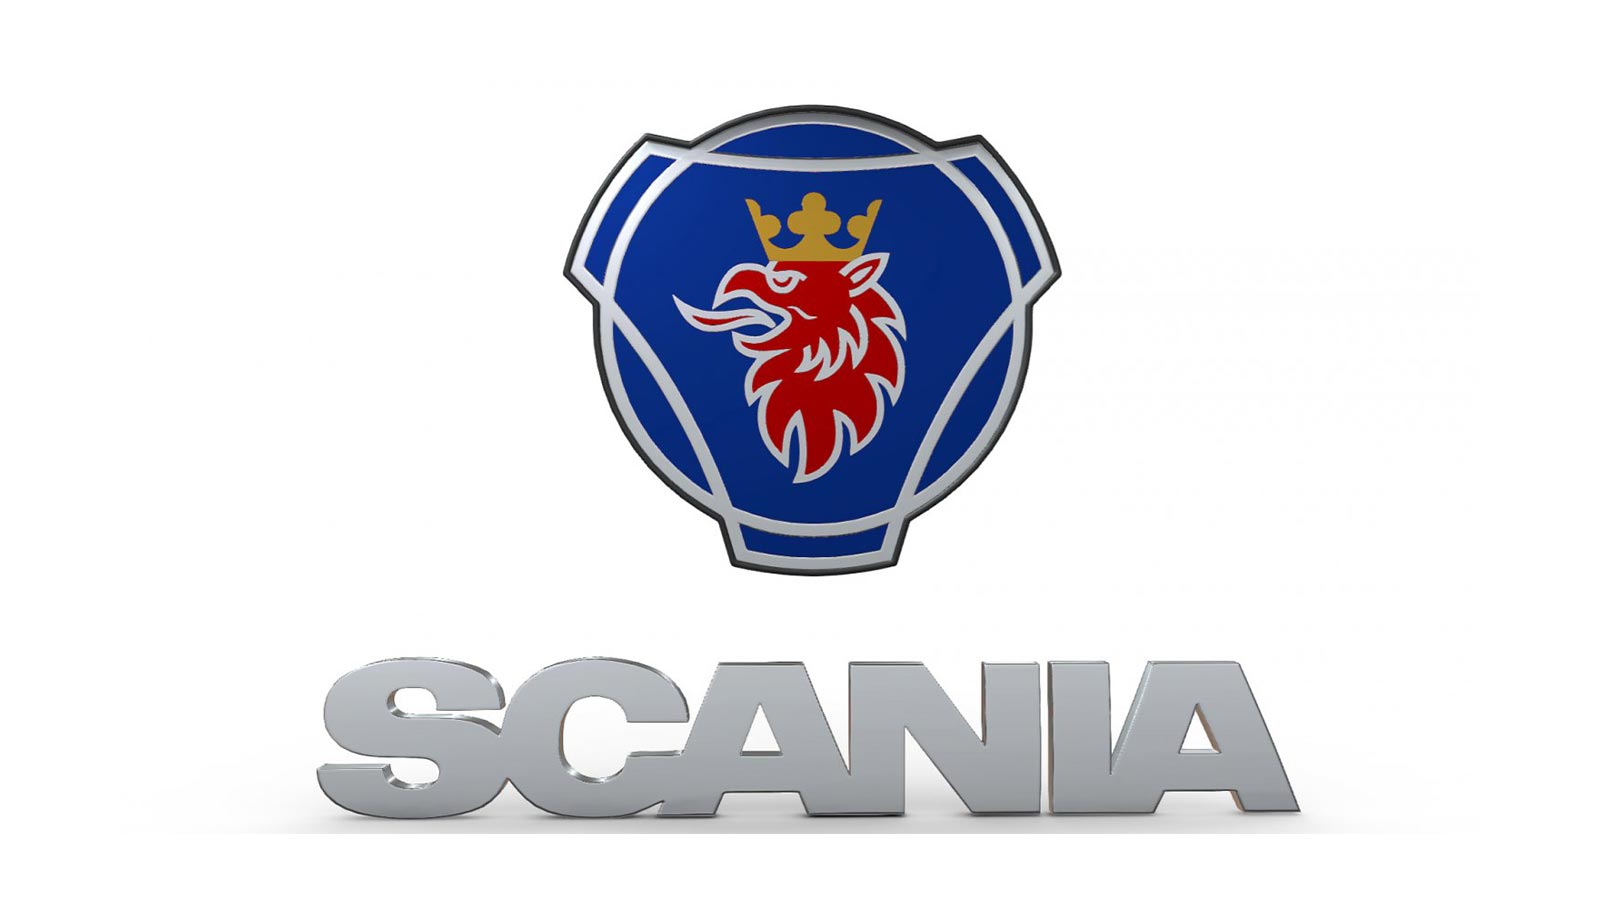 Scania Markası Tarihi ve Tarihsel Gelişimi